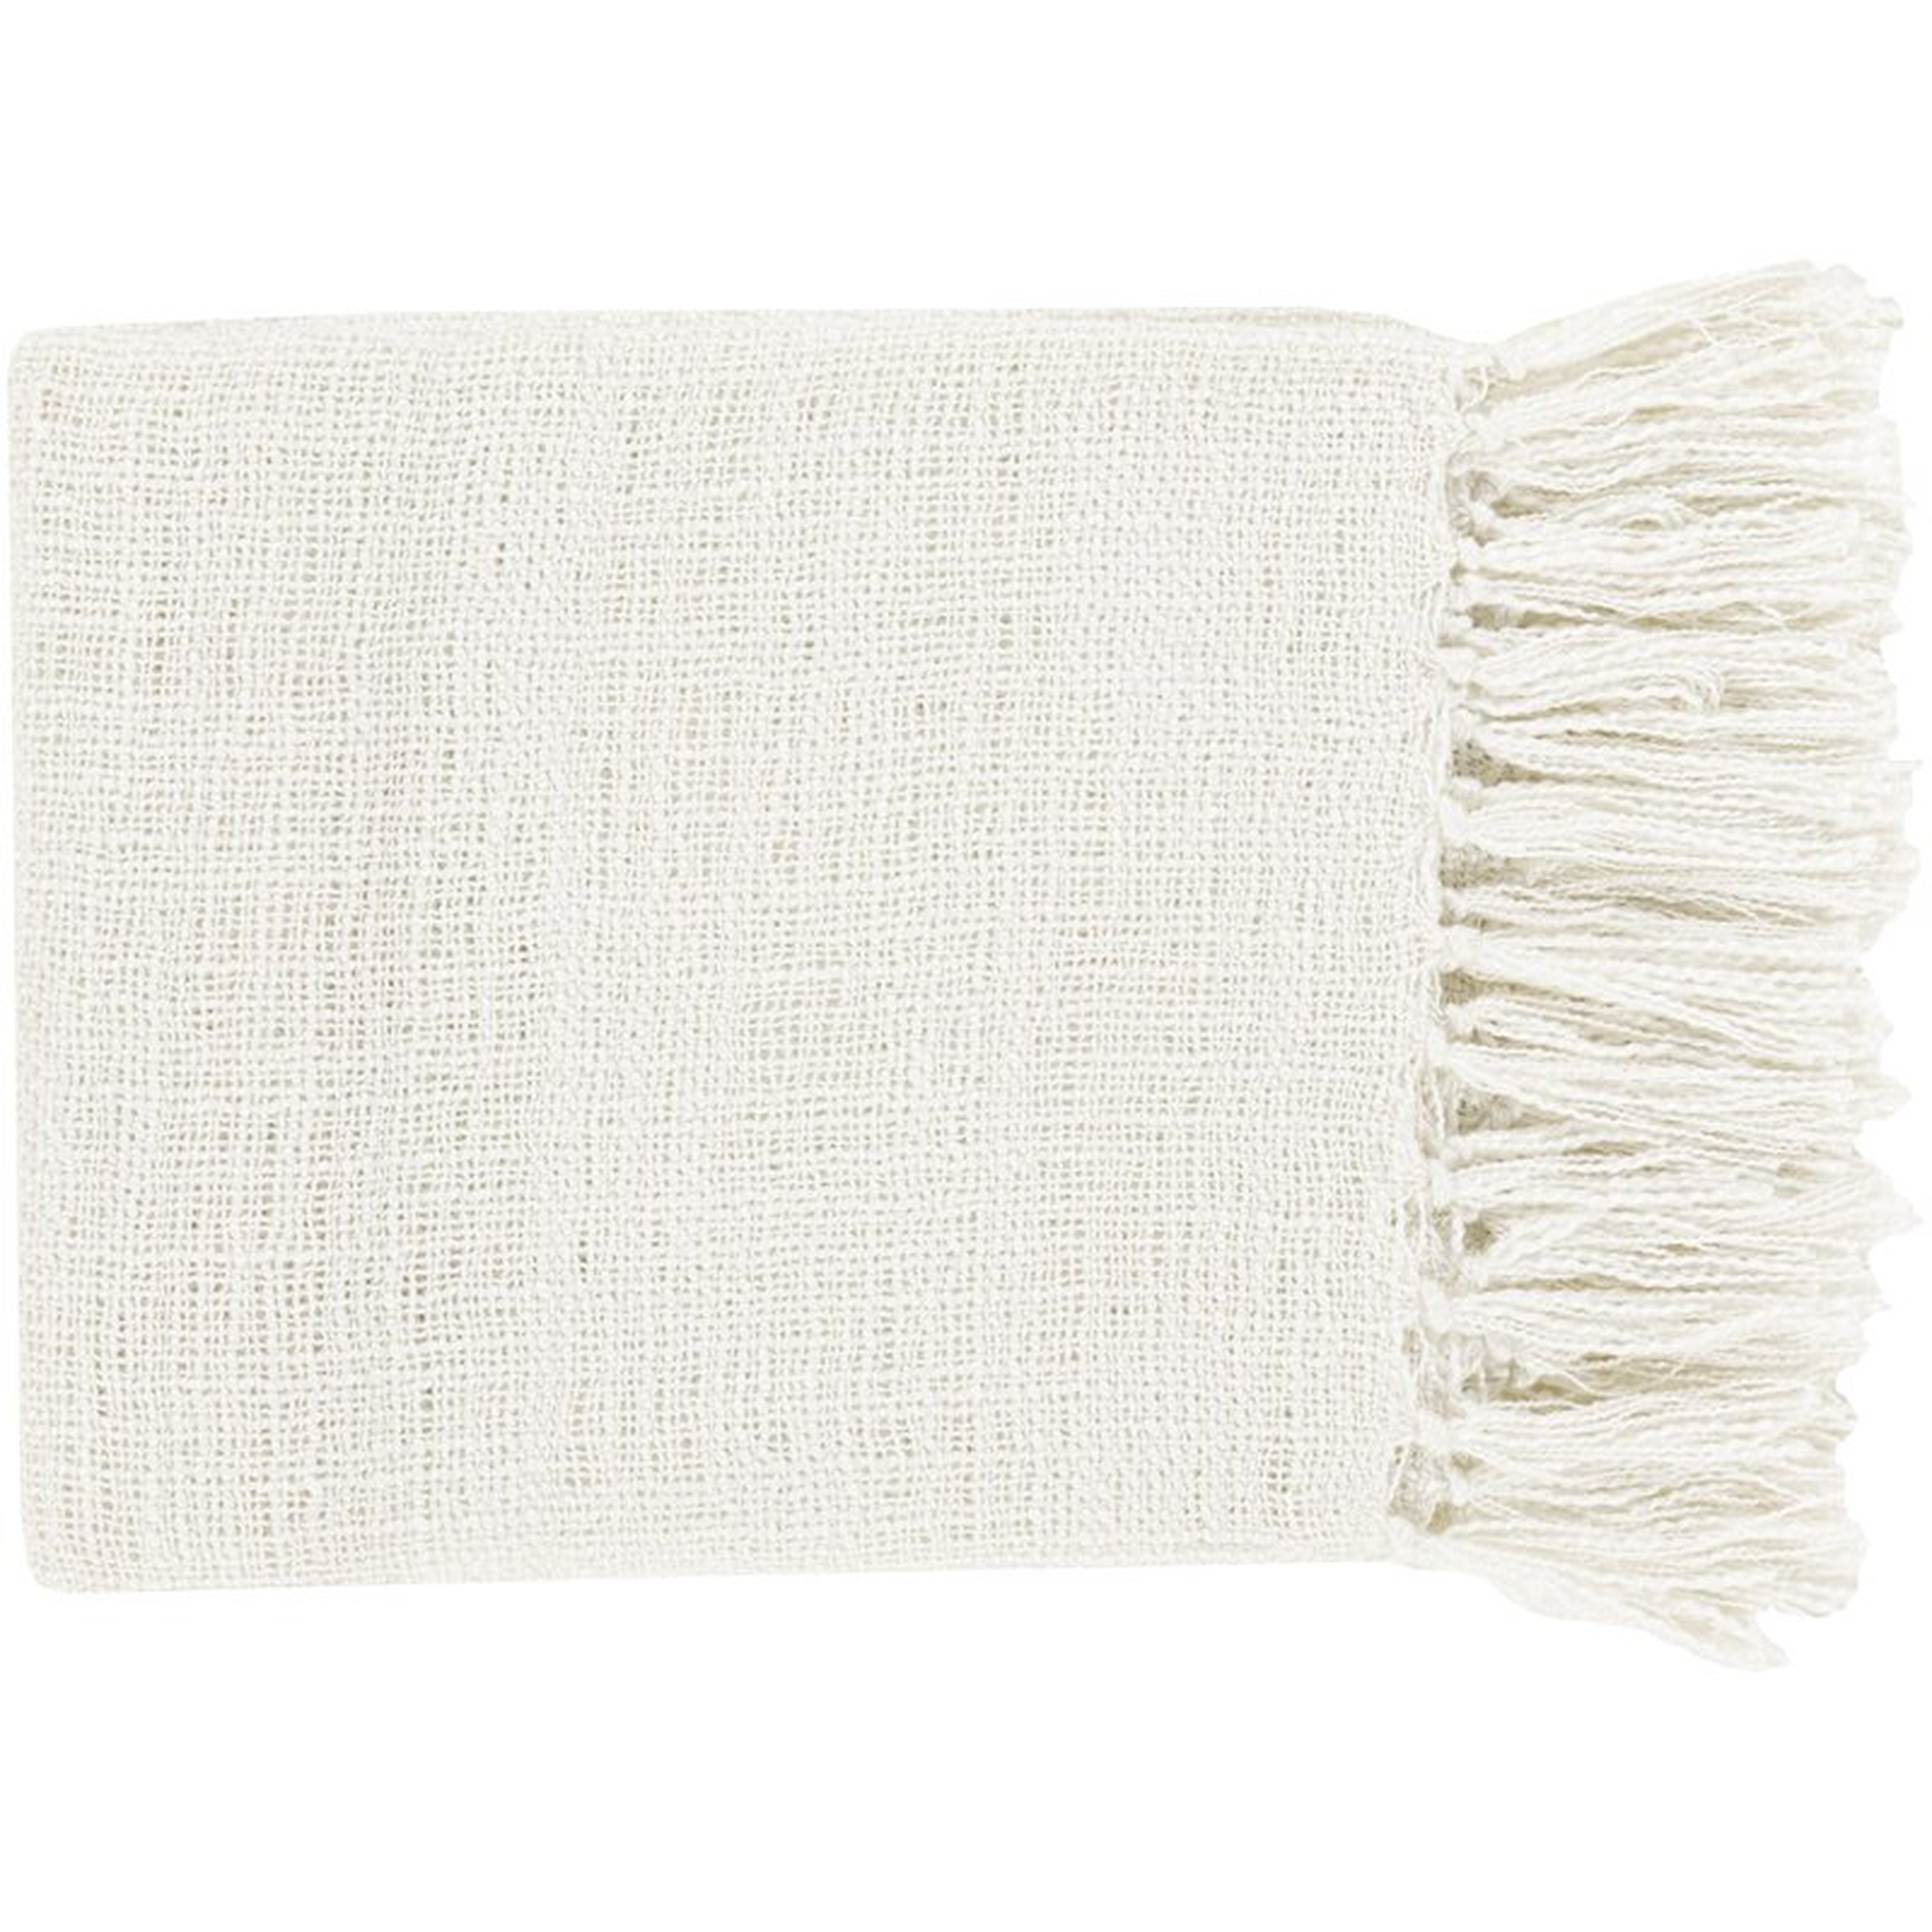 Bovina Throw Blanket - White - Wayfair